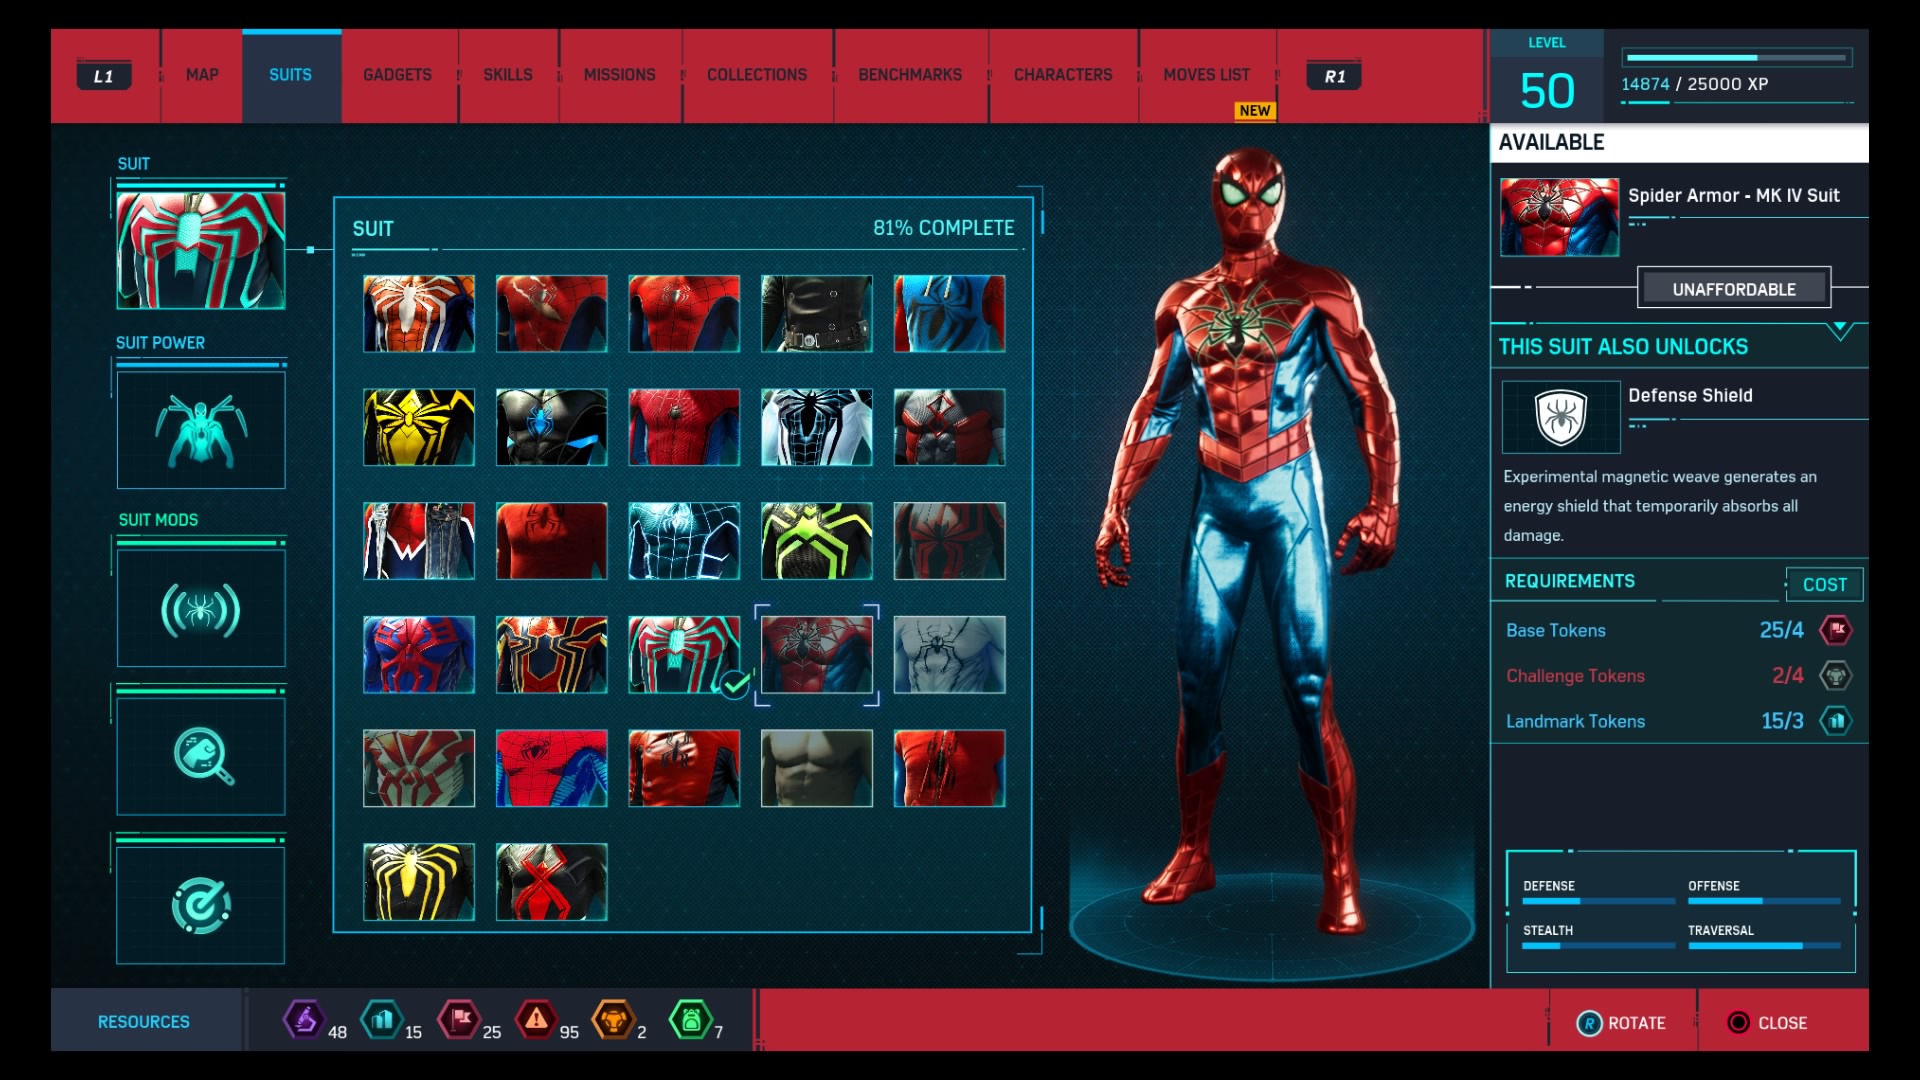 #16 Spider Armor - MK IV Suit